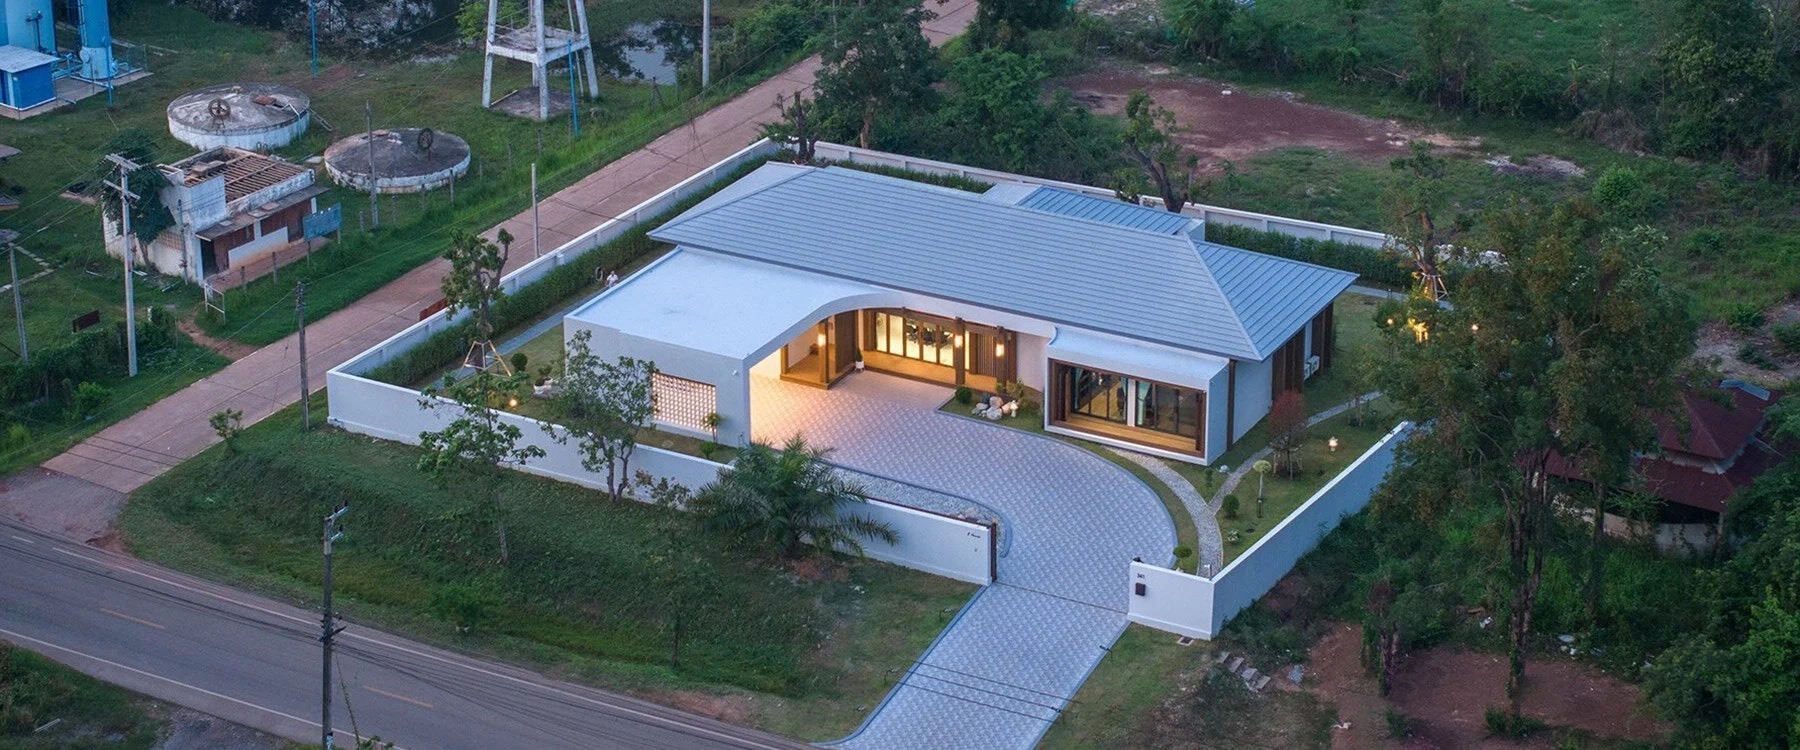 این خانه برای یک پزشک فراری از شلوغی طراحی شده است (موبنا)